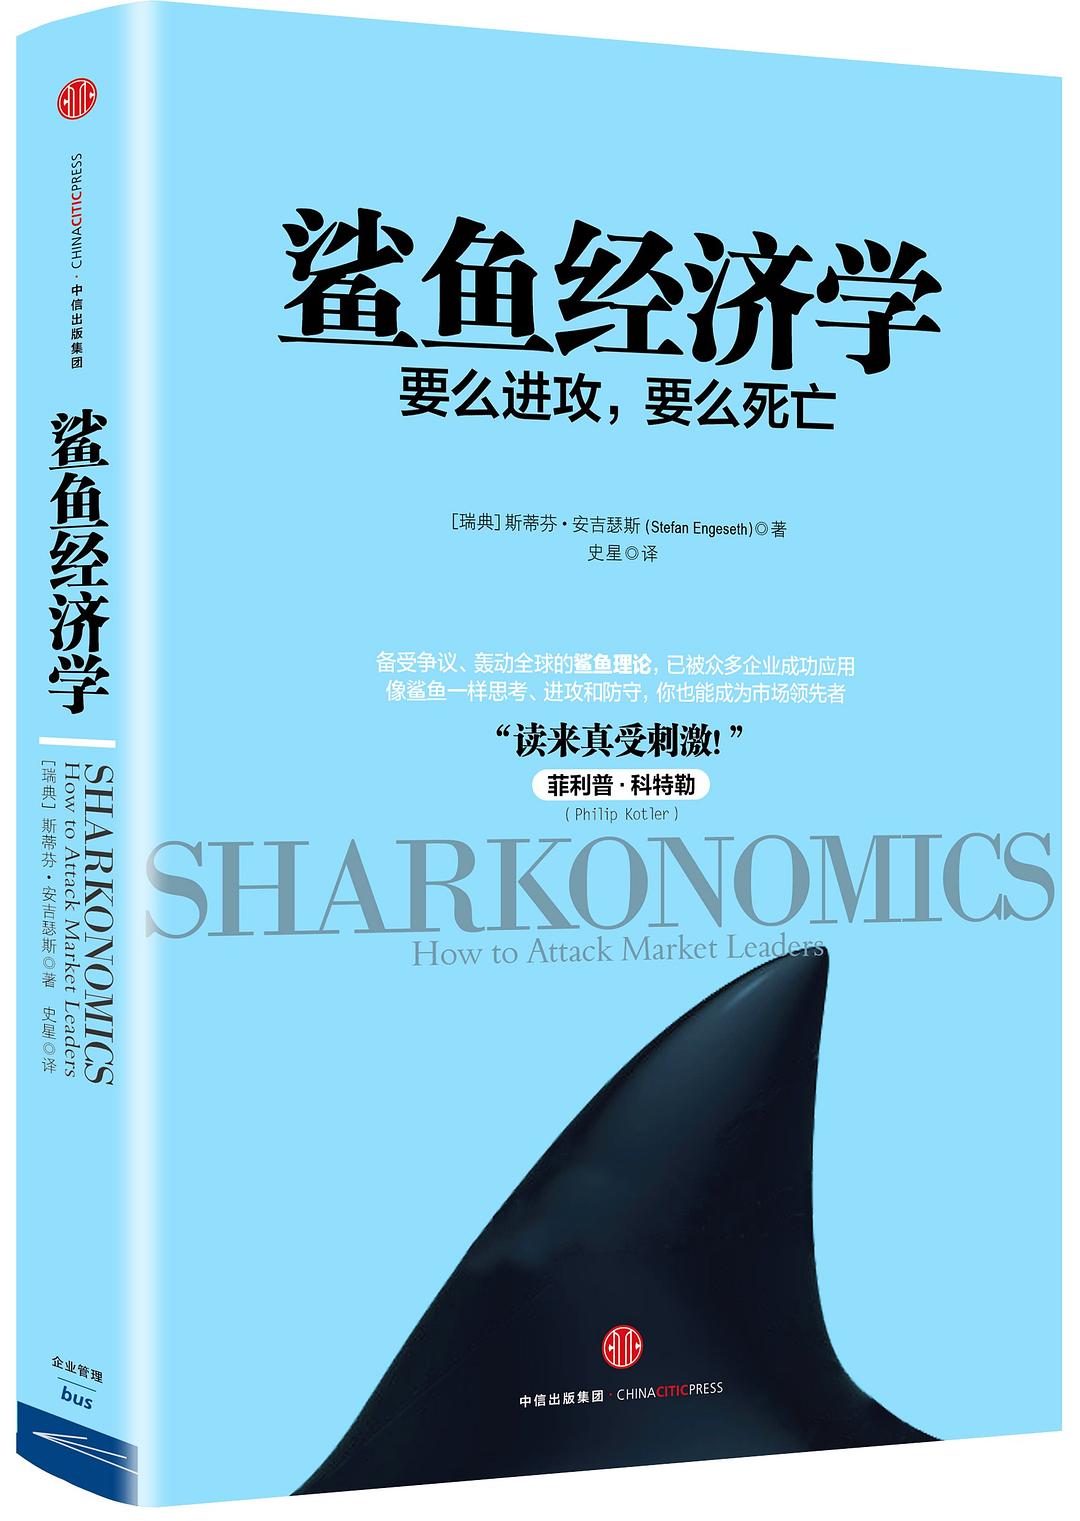 鲨鱼经济学-好书天下